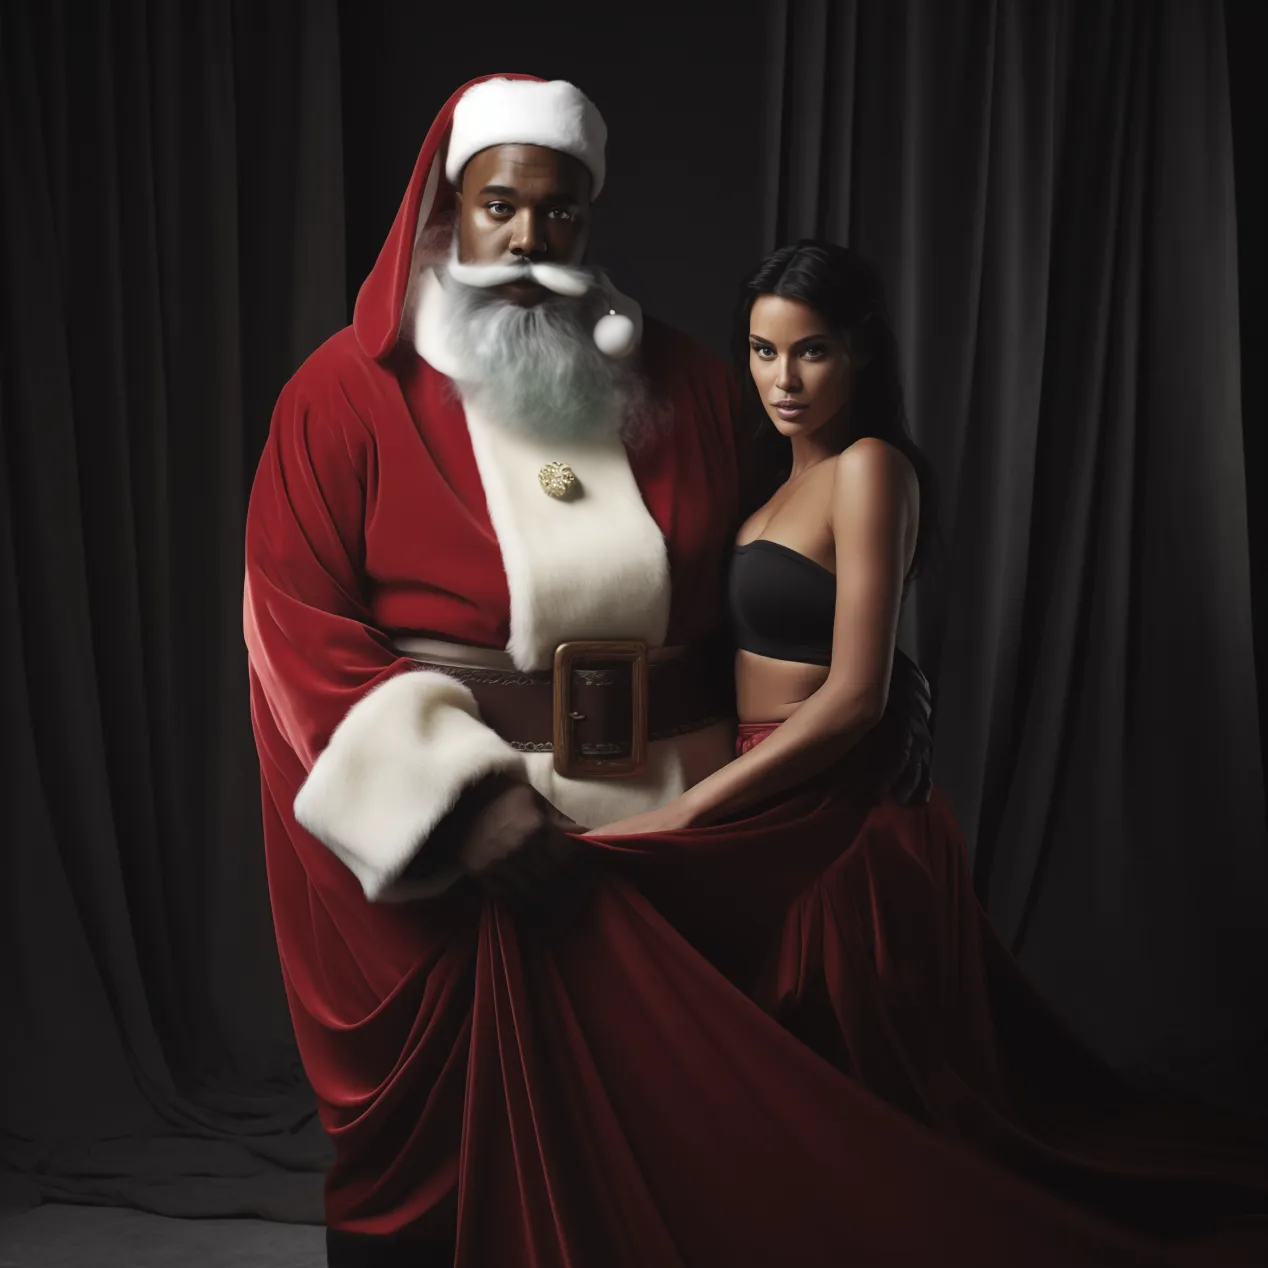 Superstar als Weihnachtsmann mit Sack und schöner Frau – für Bild KI-Weihnachtskalender, KI-Adventskalender bzw. KI-Kalender